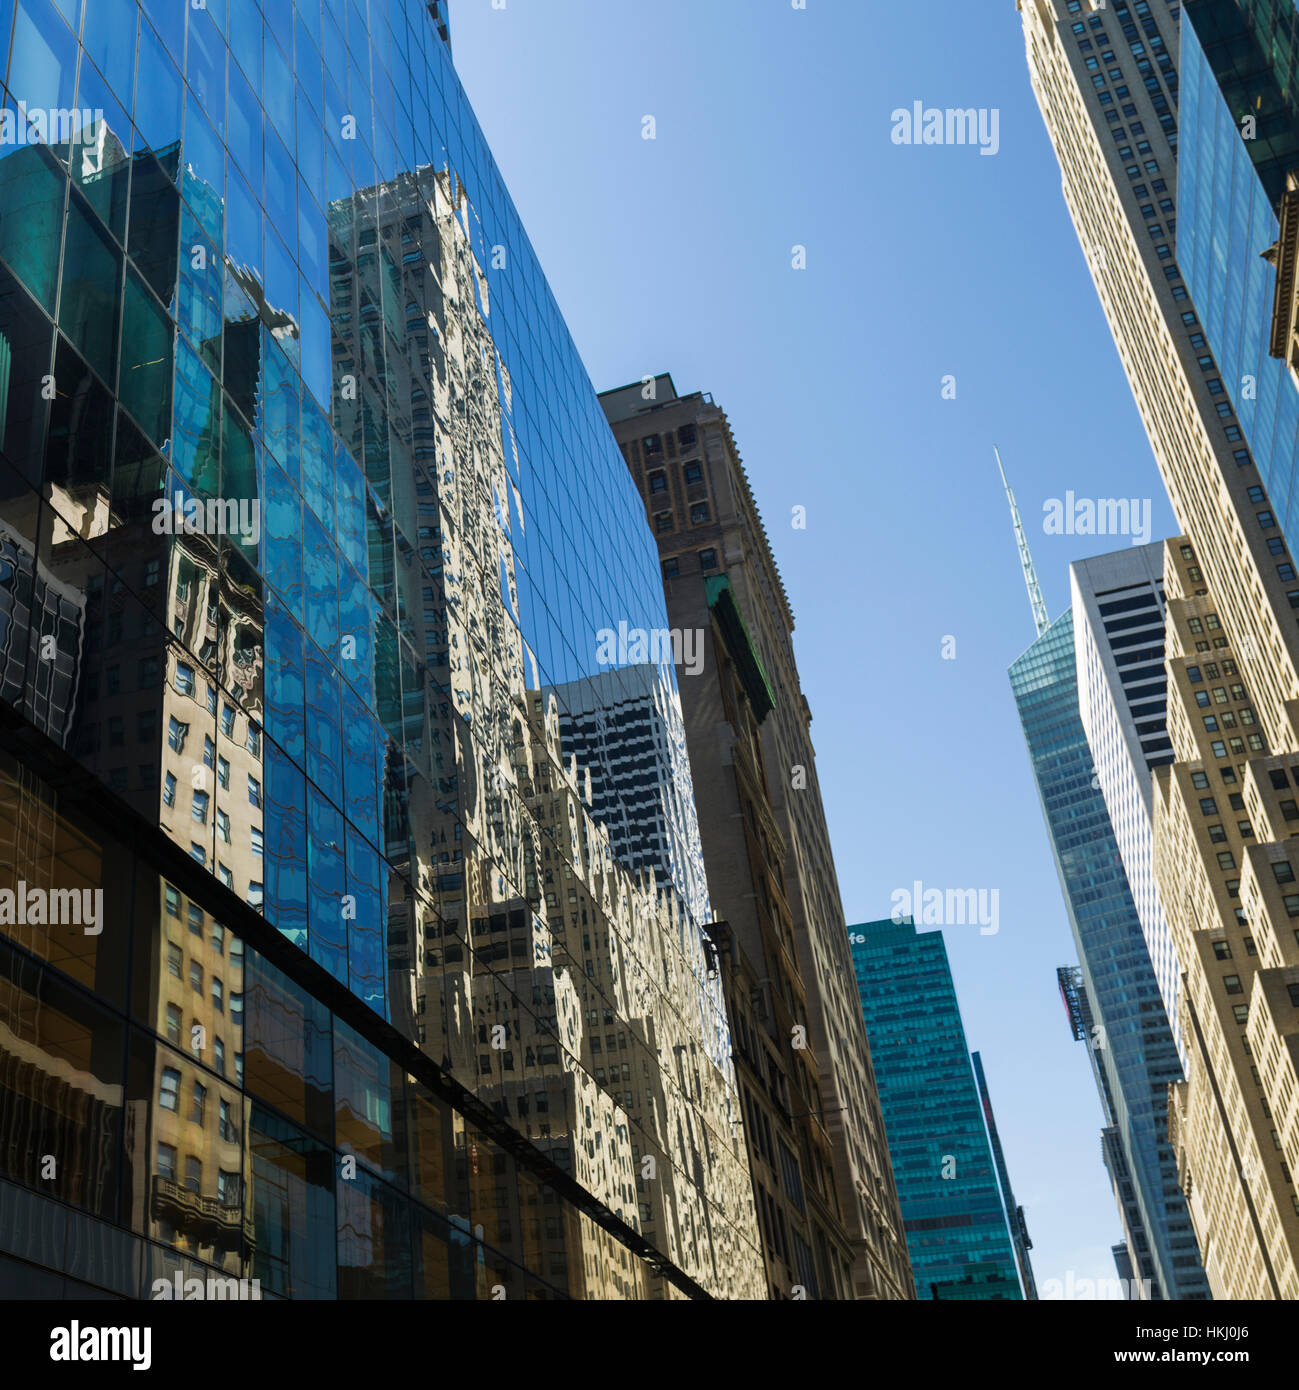 La facciata di vetro di un grattacielo che riflettono gli altri grattacieli; la città di New York, New York, Stati Uniti d'America Foto Stock